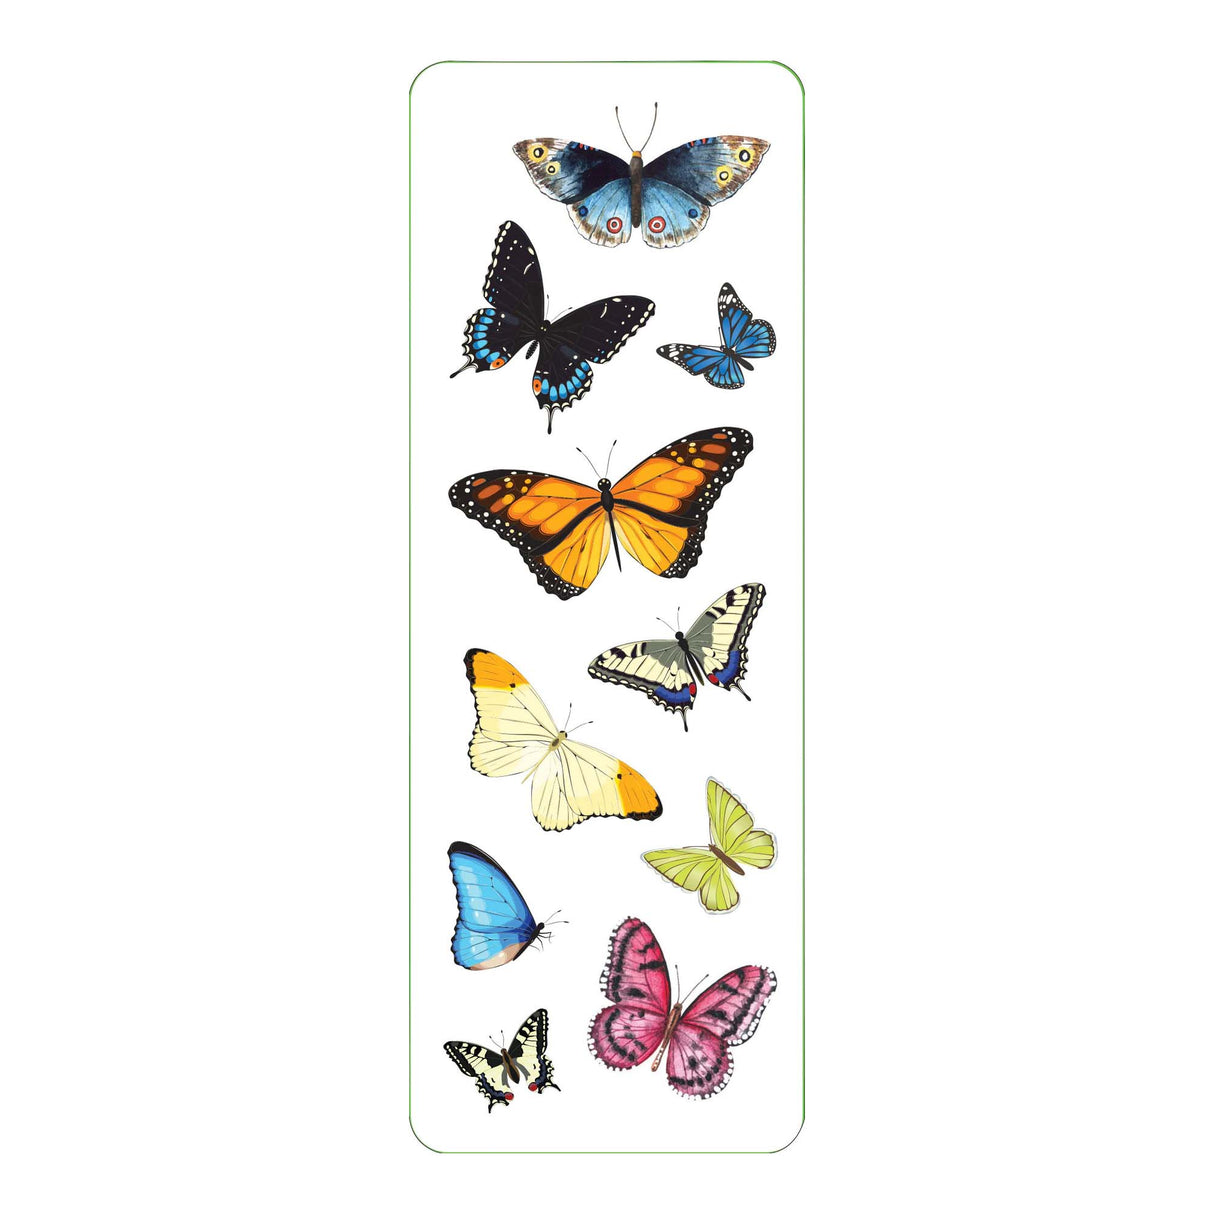 Butterflies Sticker Set